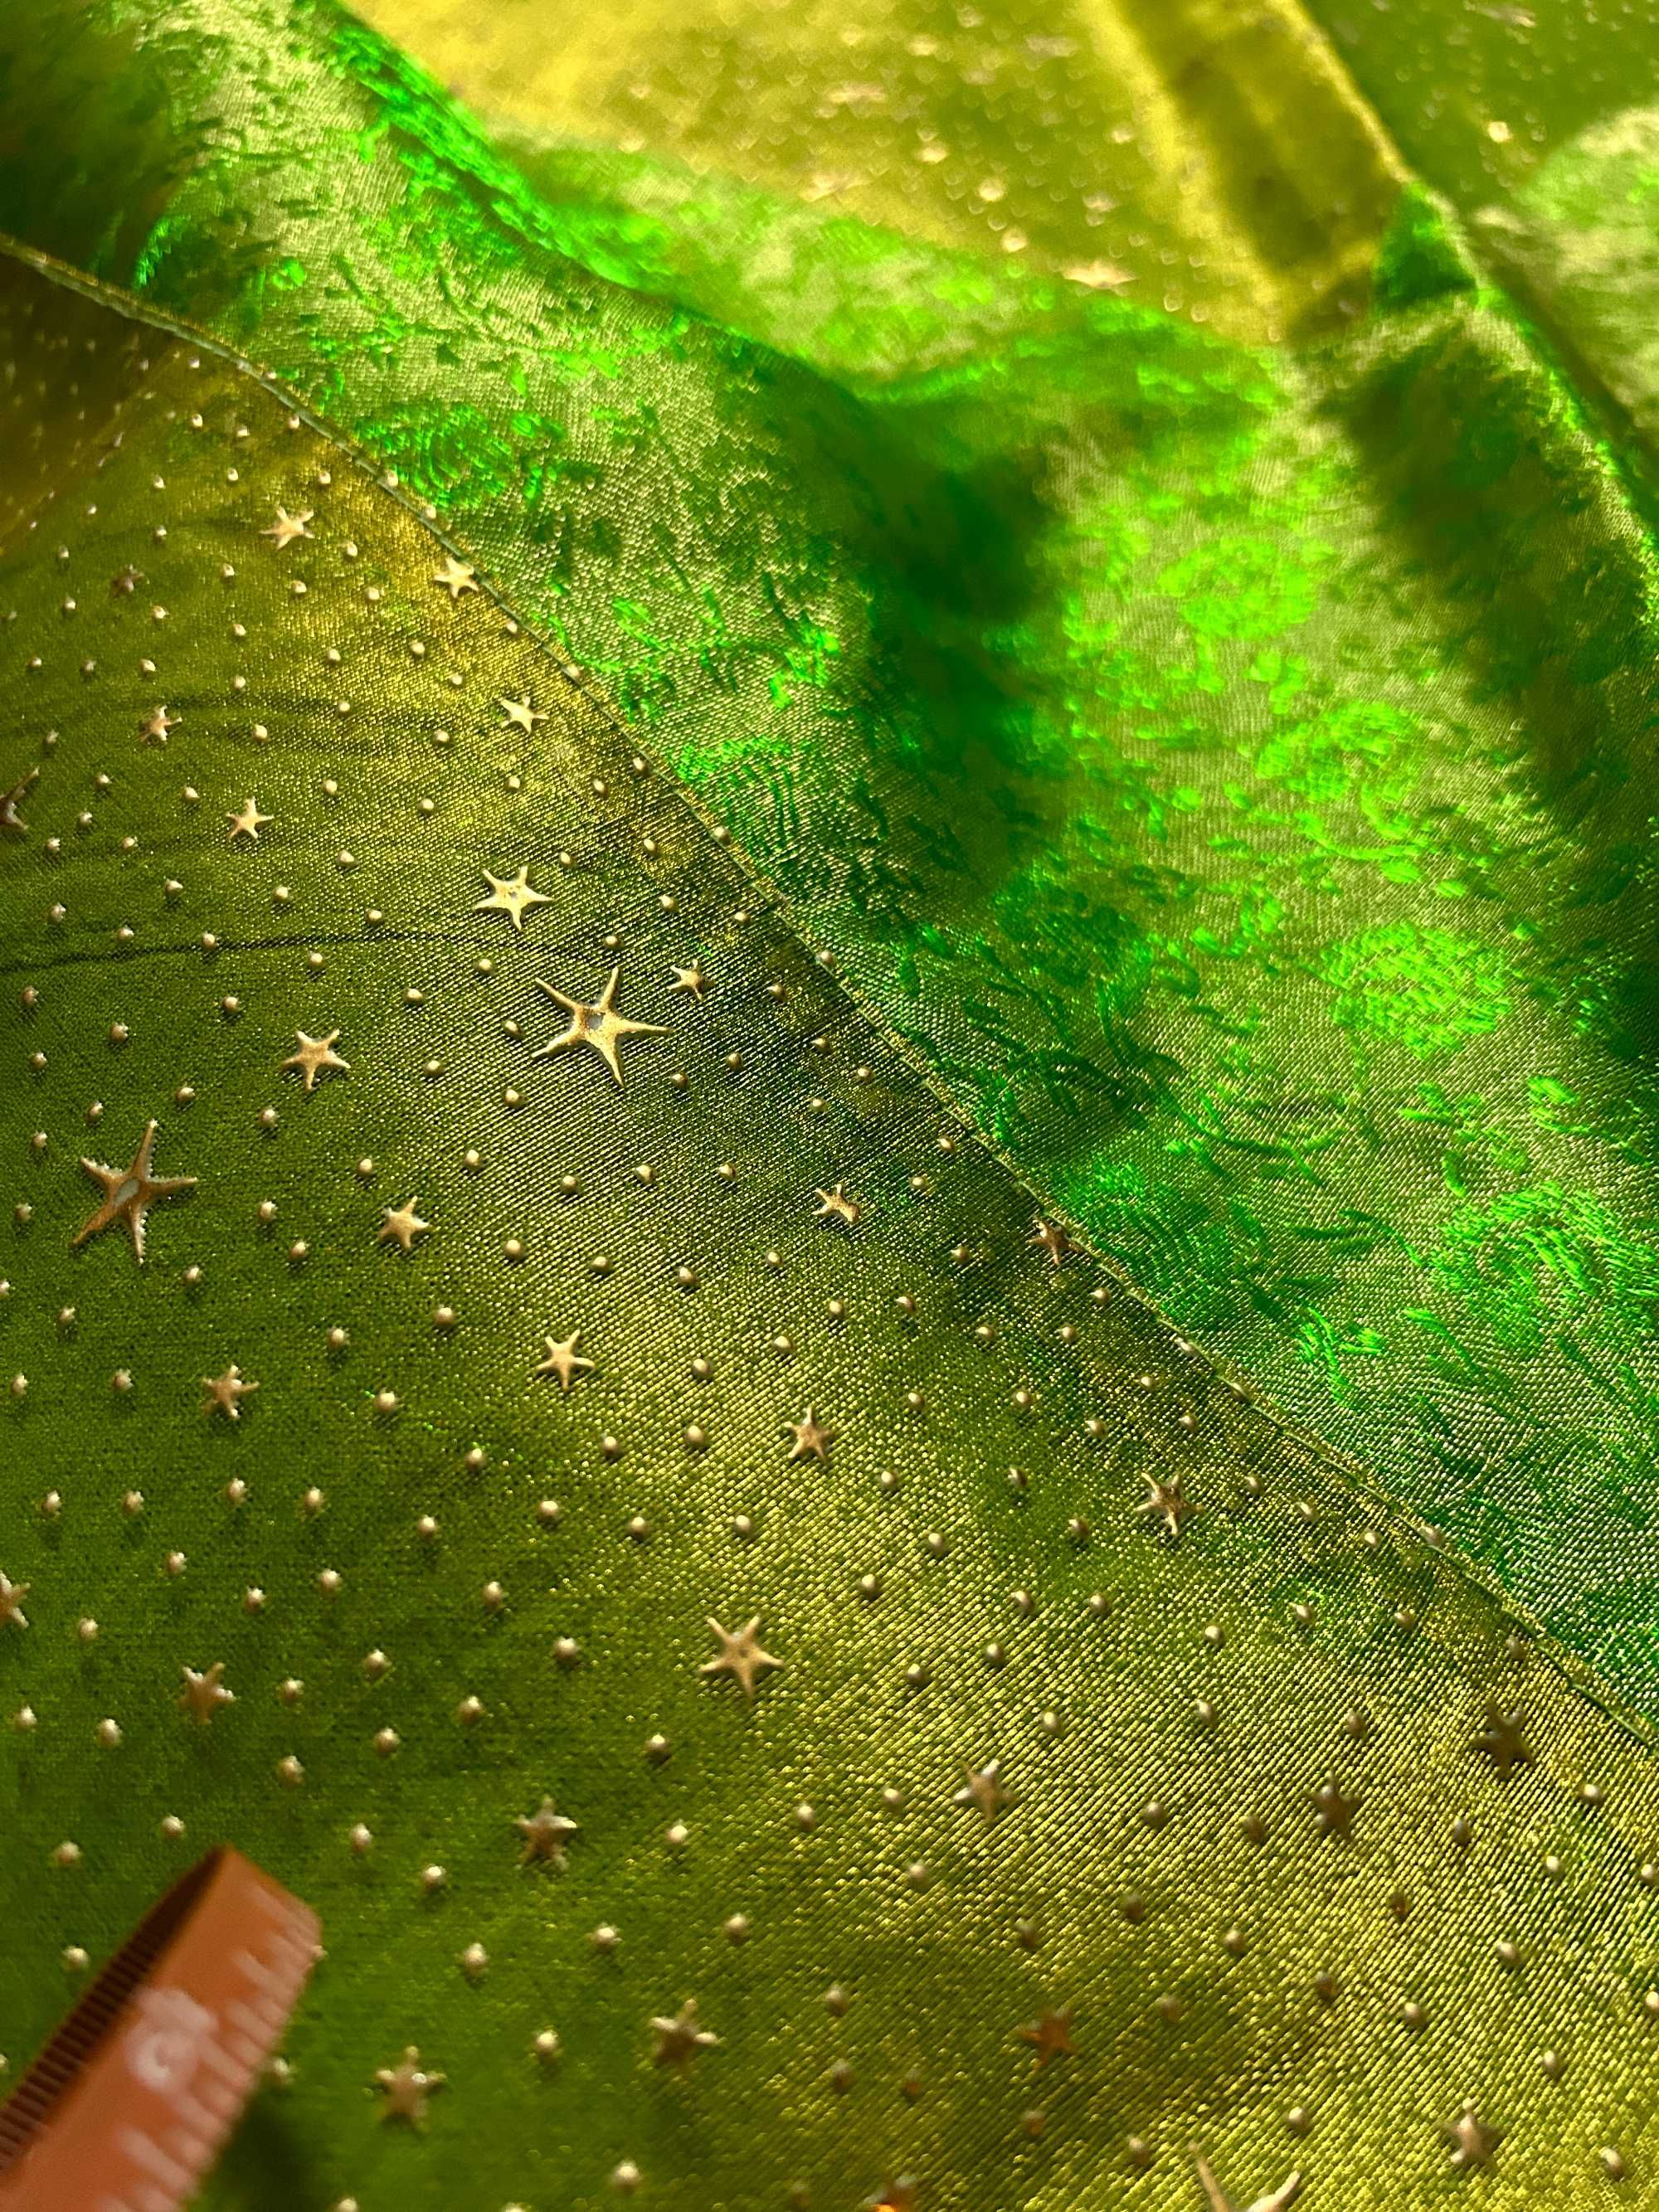 Coberta indiana verde, com aplicações em estrelas douradas